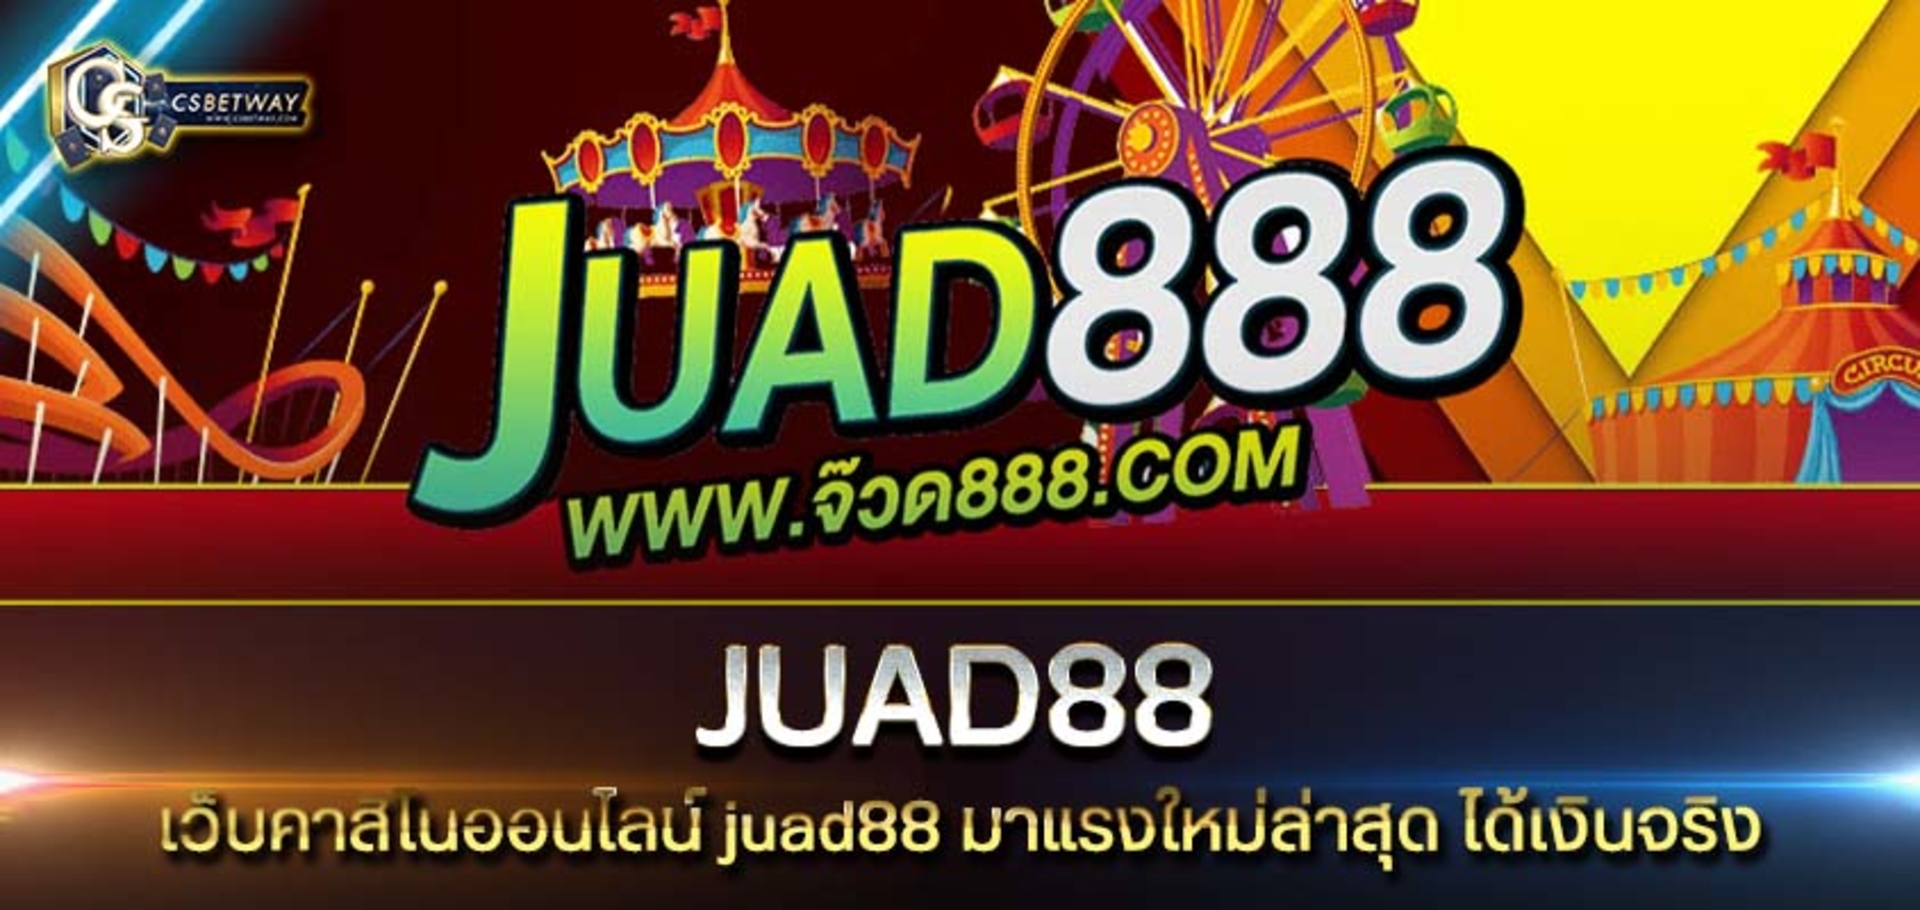 juad88 เว็บคาสิโนออนไลน์ juad88 มาแรงใหม่ล่าสุด ได้เงินจริง